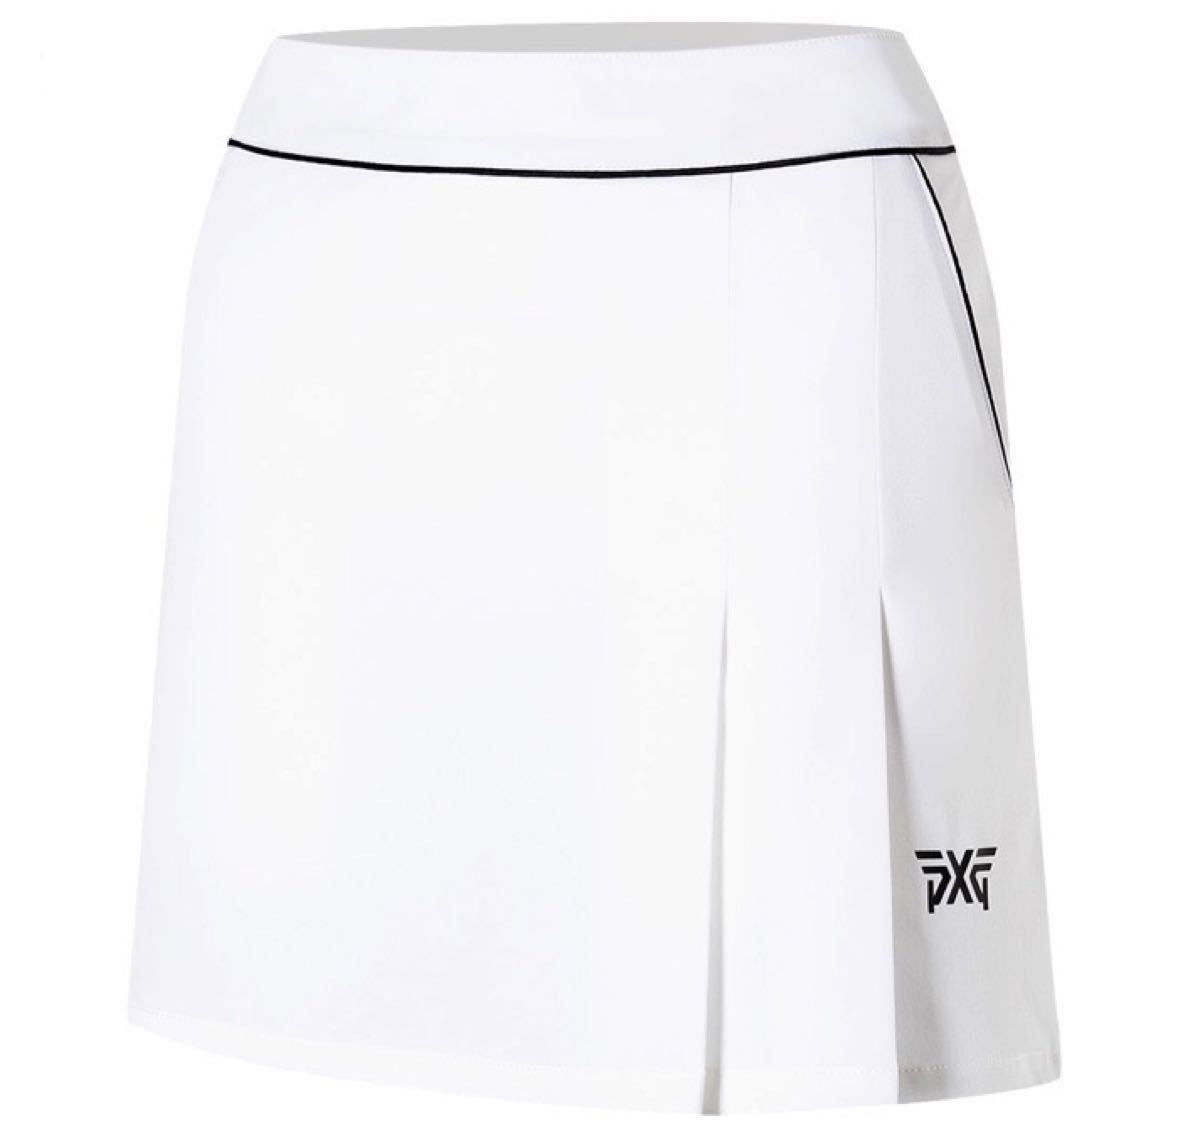 ラッピング不可】 pxgゴルフスカート白色スカートM ウエア(女性用 